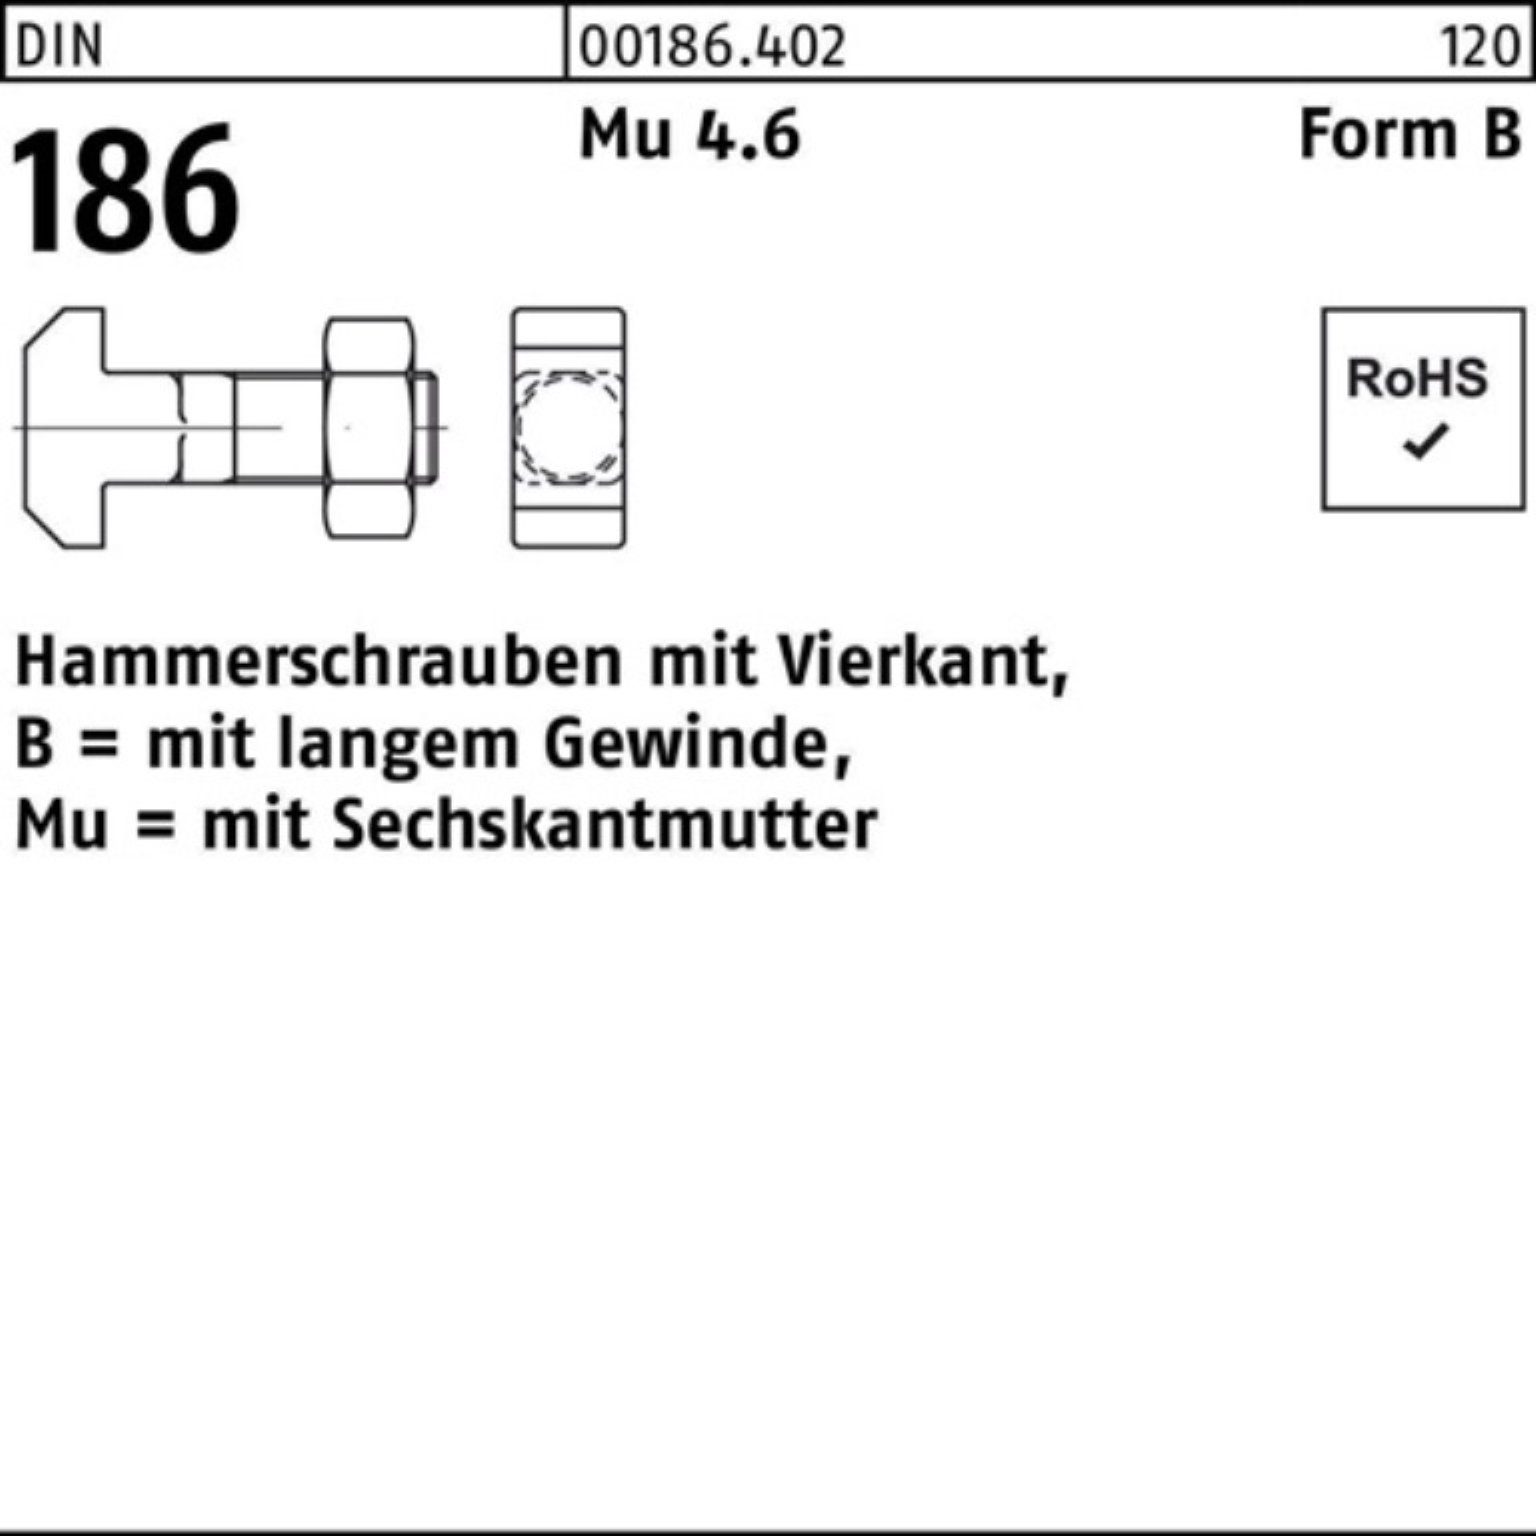 Reyher Schraube 100er Pack Hammerschraube DIN 186 FormB Vierkant 6-ktmutter BM 12x 100